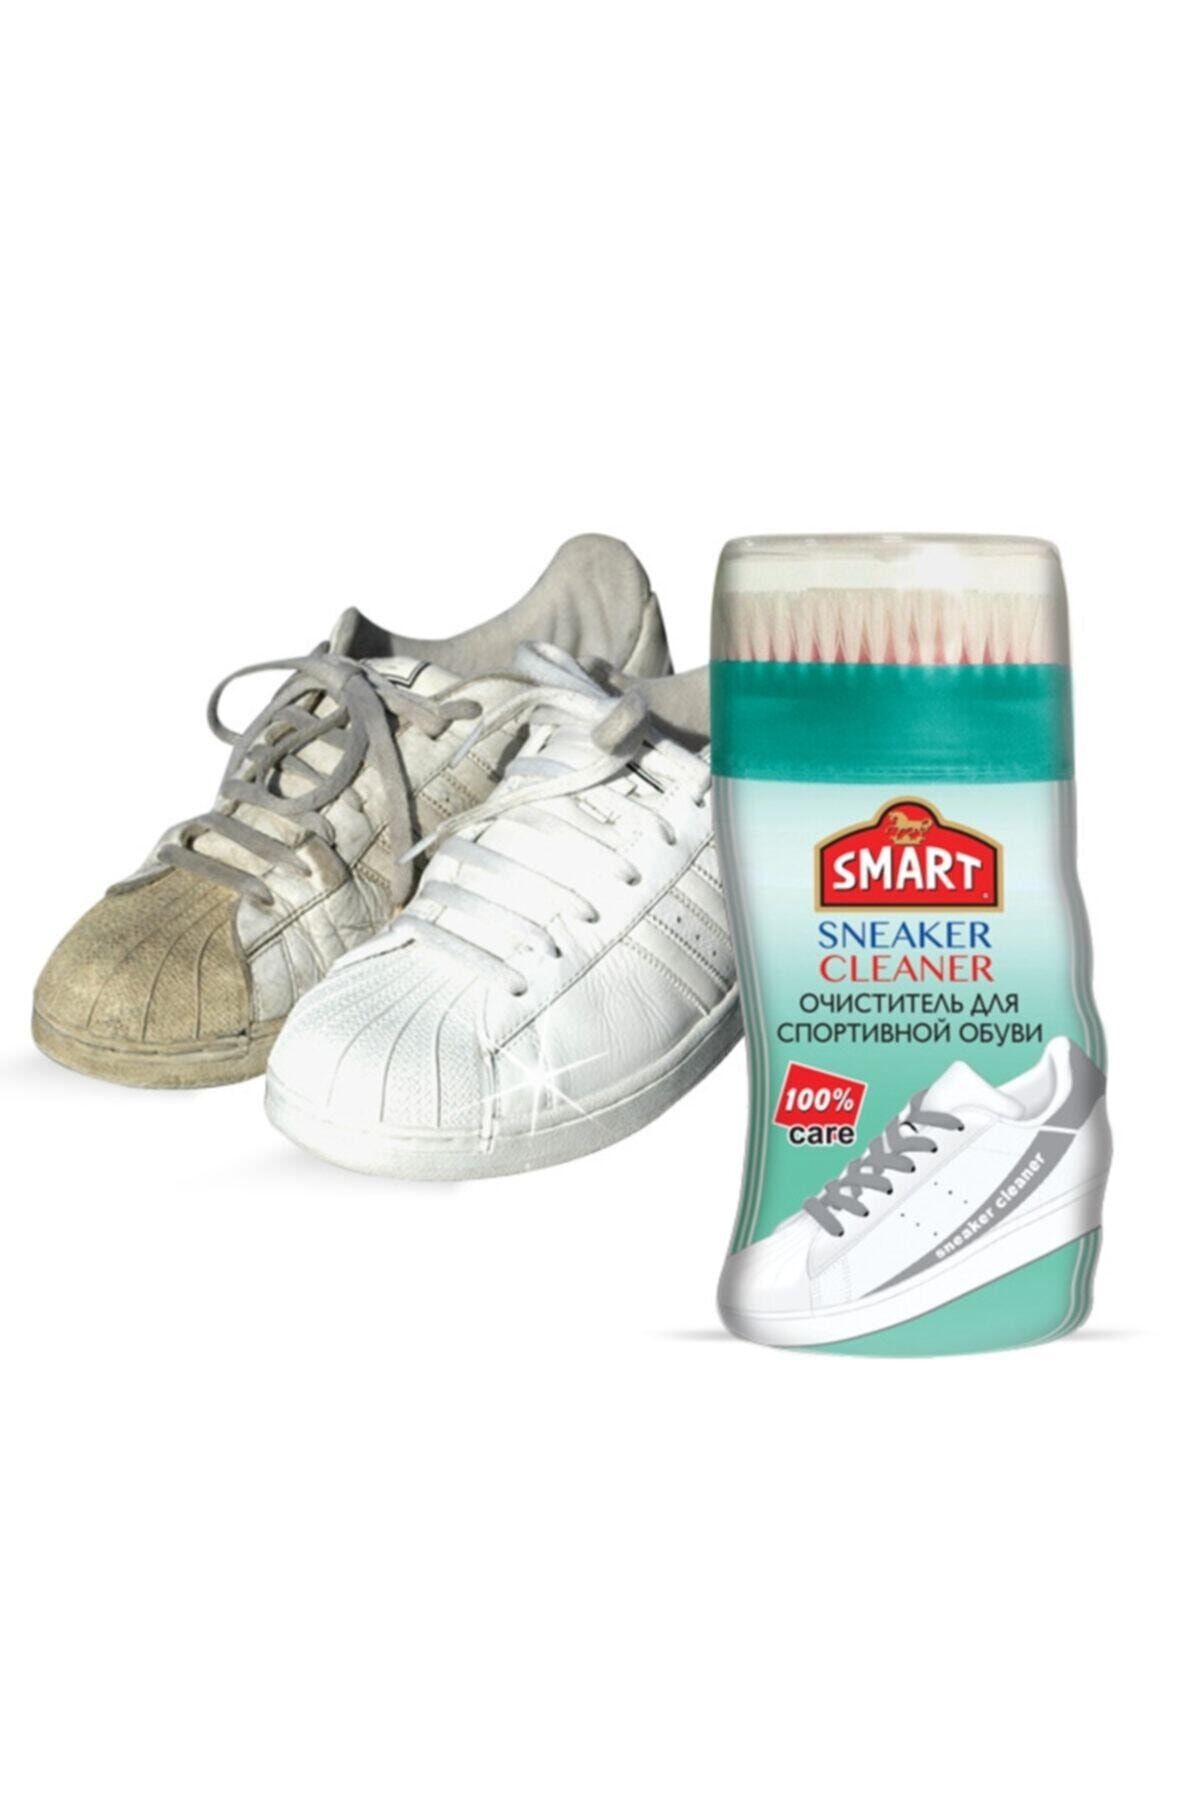 Smart Ayakkabı Temizleme Şampuanı - (deri, Süet, Nubuk, Tekstil)